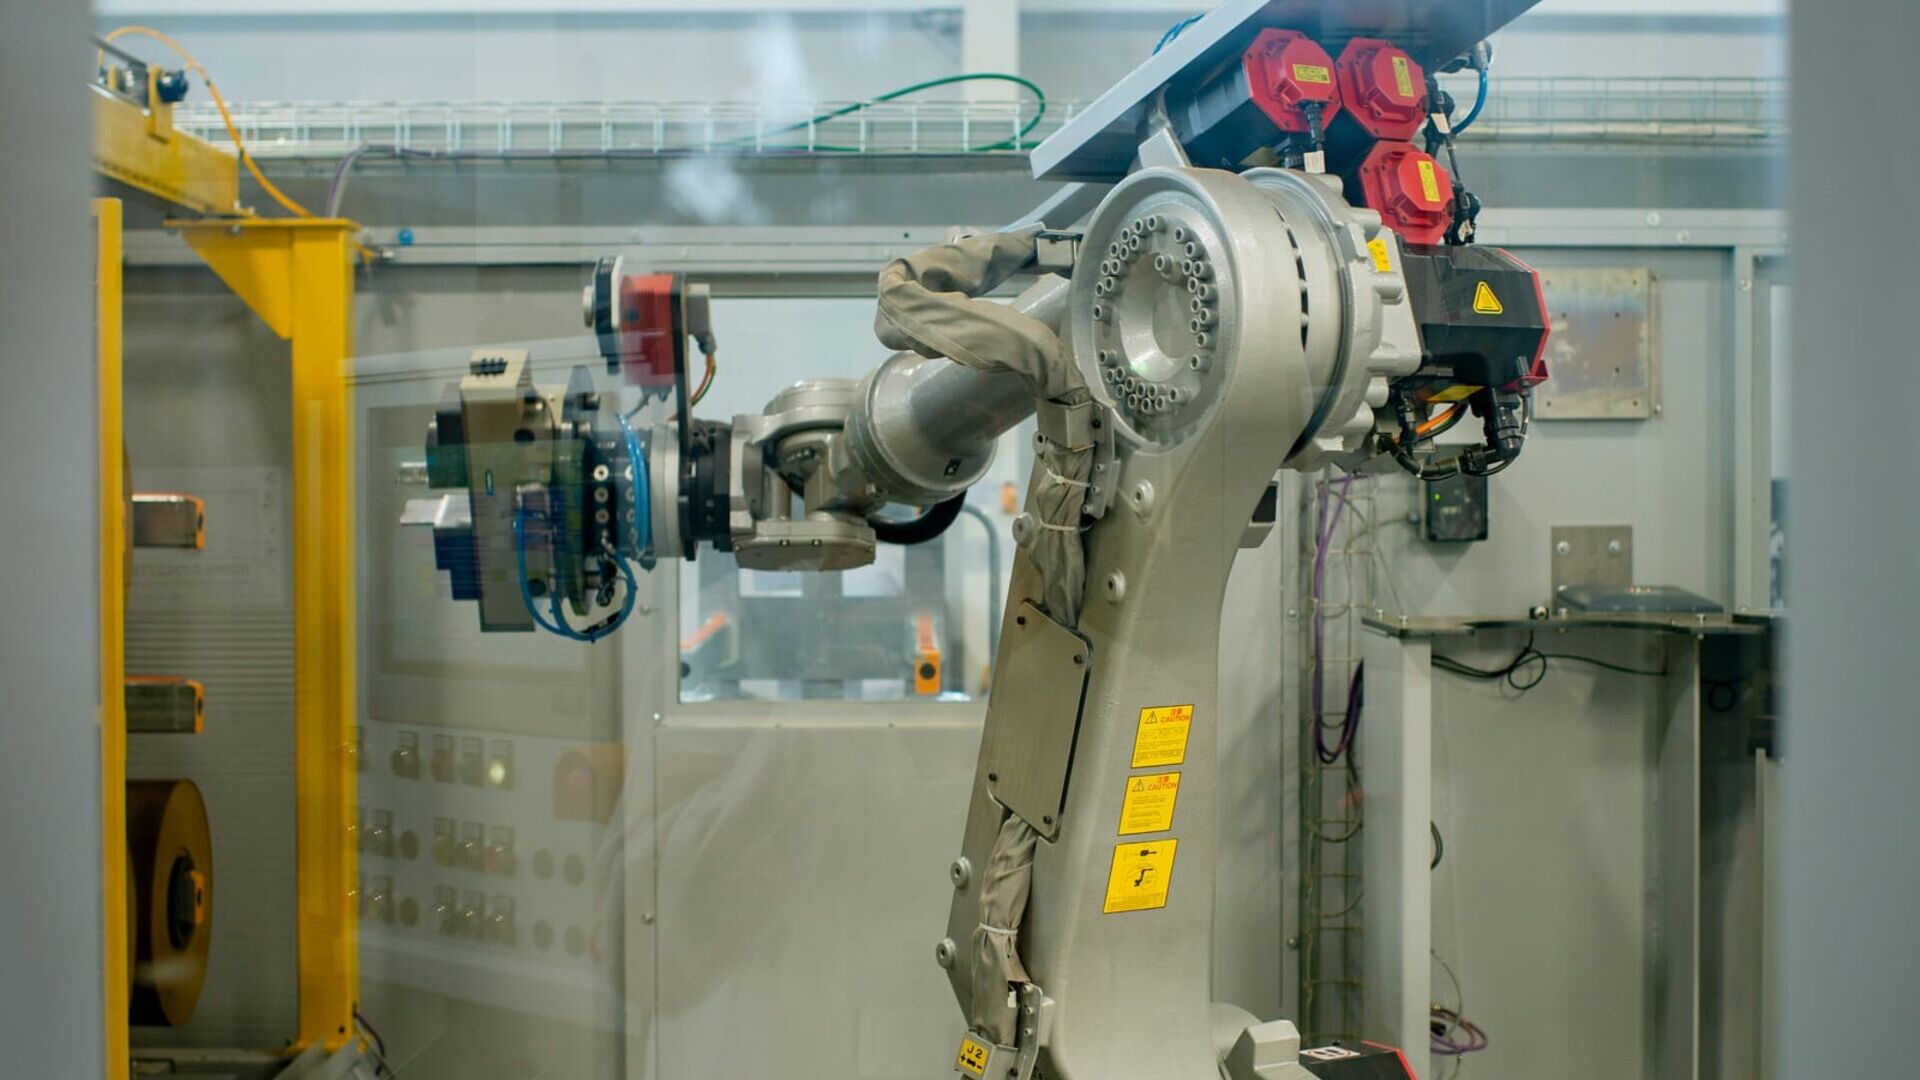 菲利普莫里斯：位于艾米利亚-罗马涅大区克雷斯佩拉诺的菲利普莫里斯制造和技术博洛尼亚公司内的操作机器人